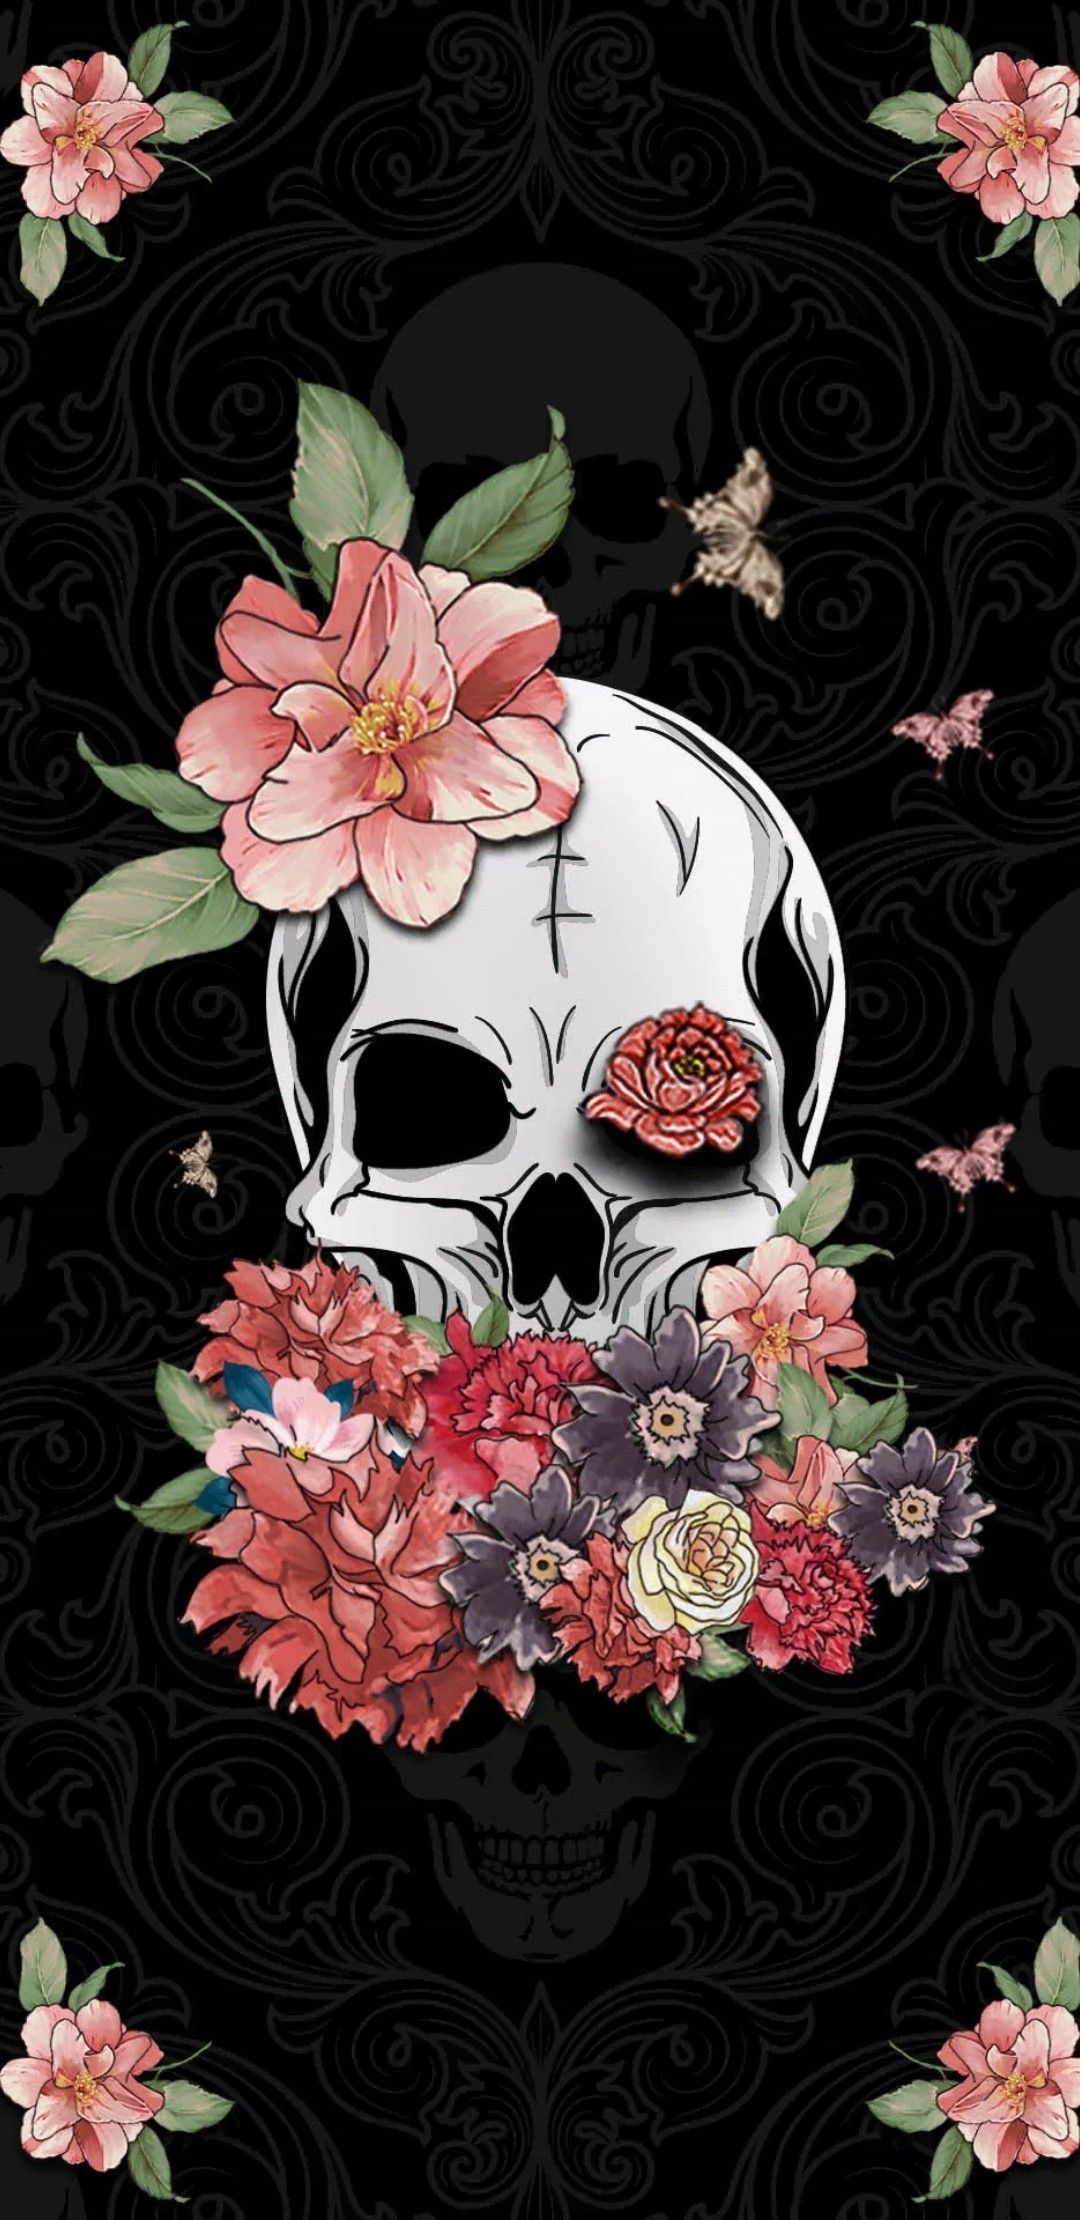 Skull And Roses Aesthetic Wallpaper